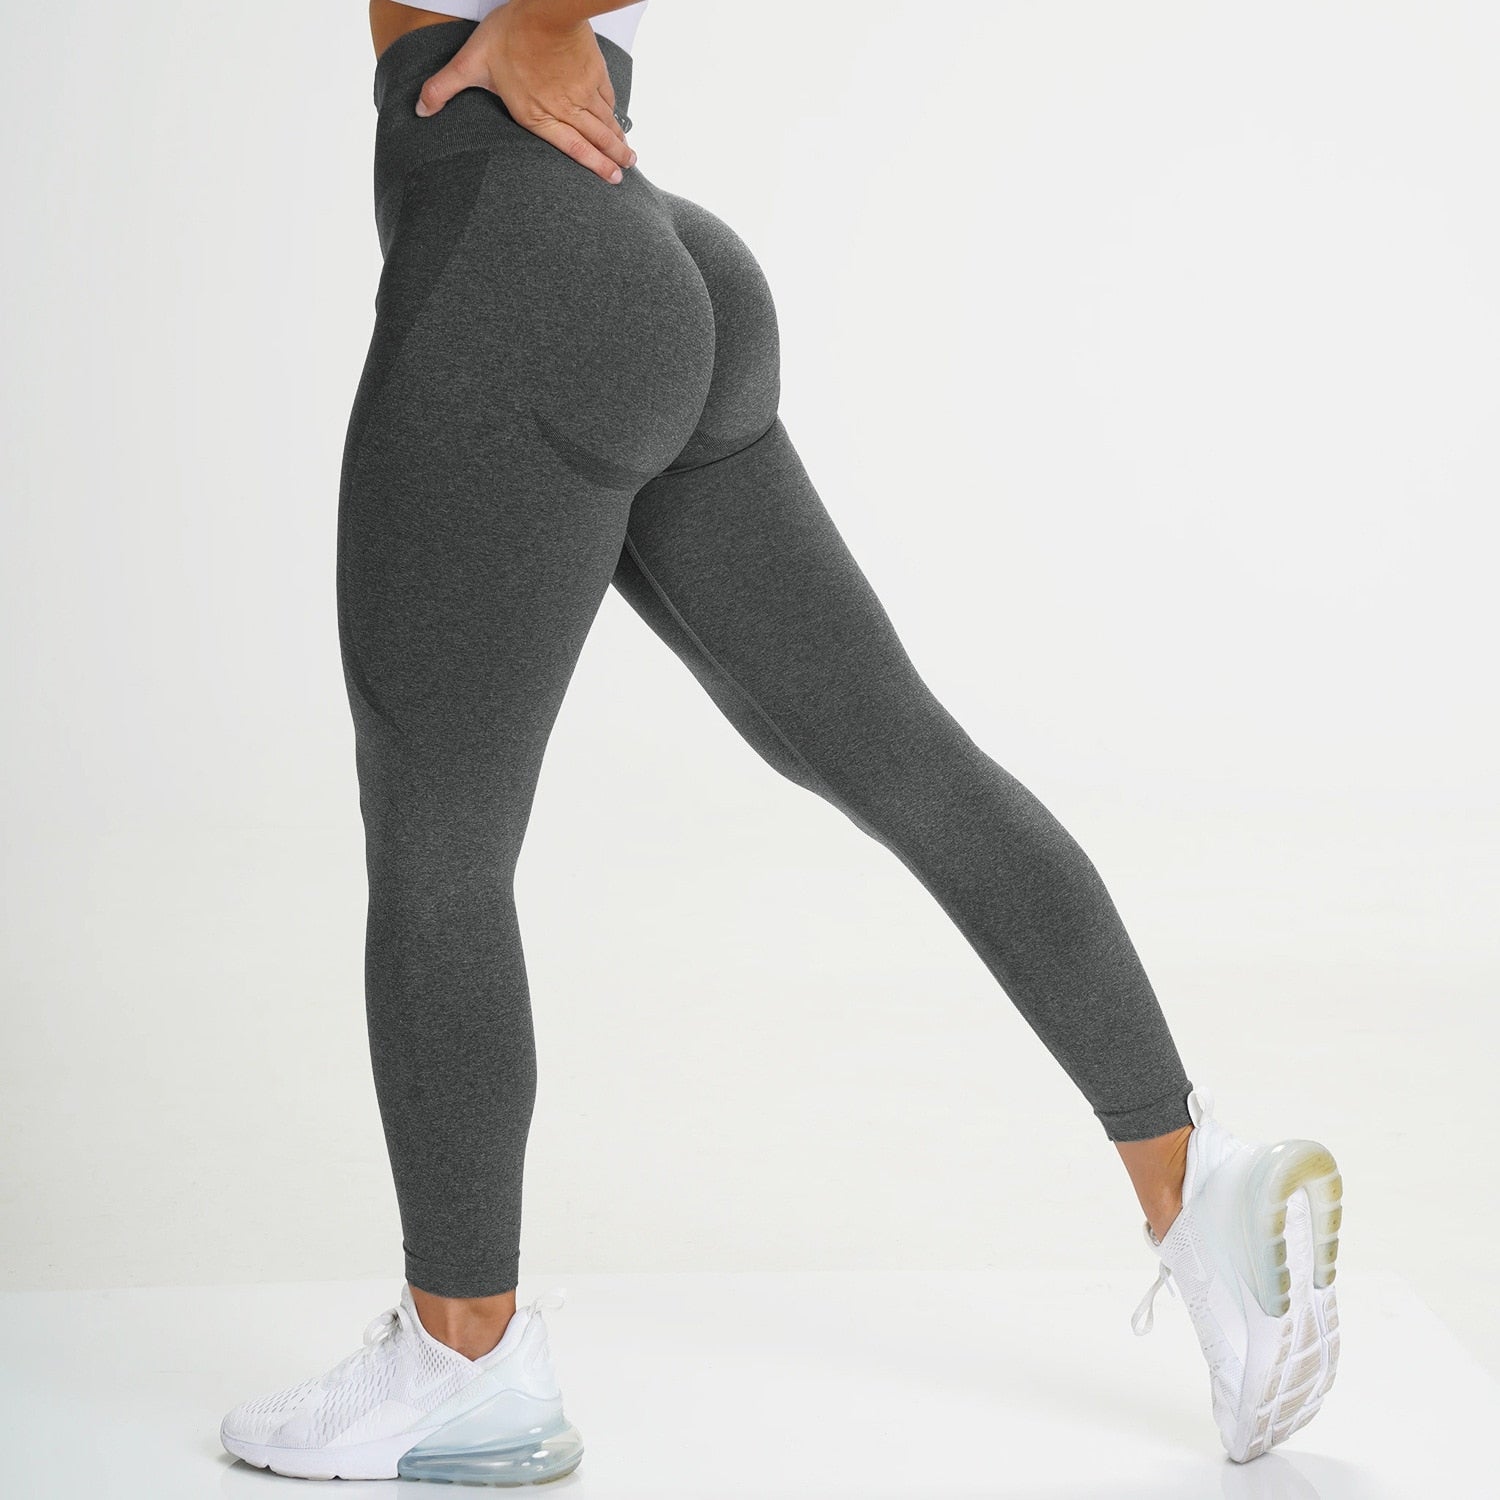 Mojoyce Fitness Leggings Women Push Up Yoga Pant Bodybuilding Leggins Sport Seamless Legging High Waist Legging Yoga Pants Women